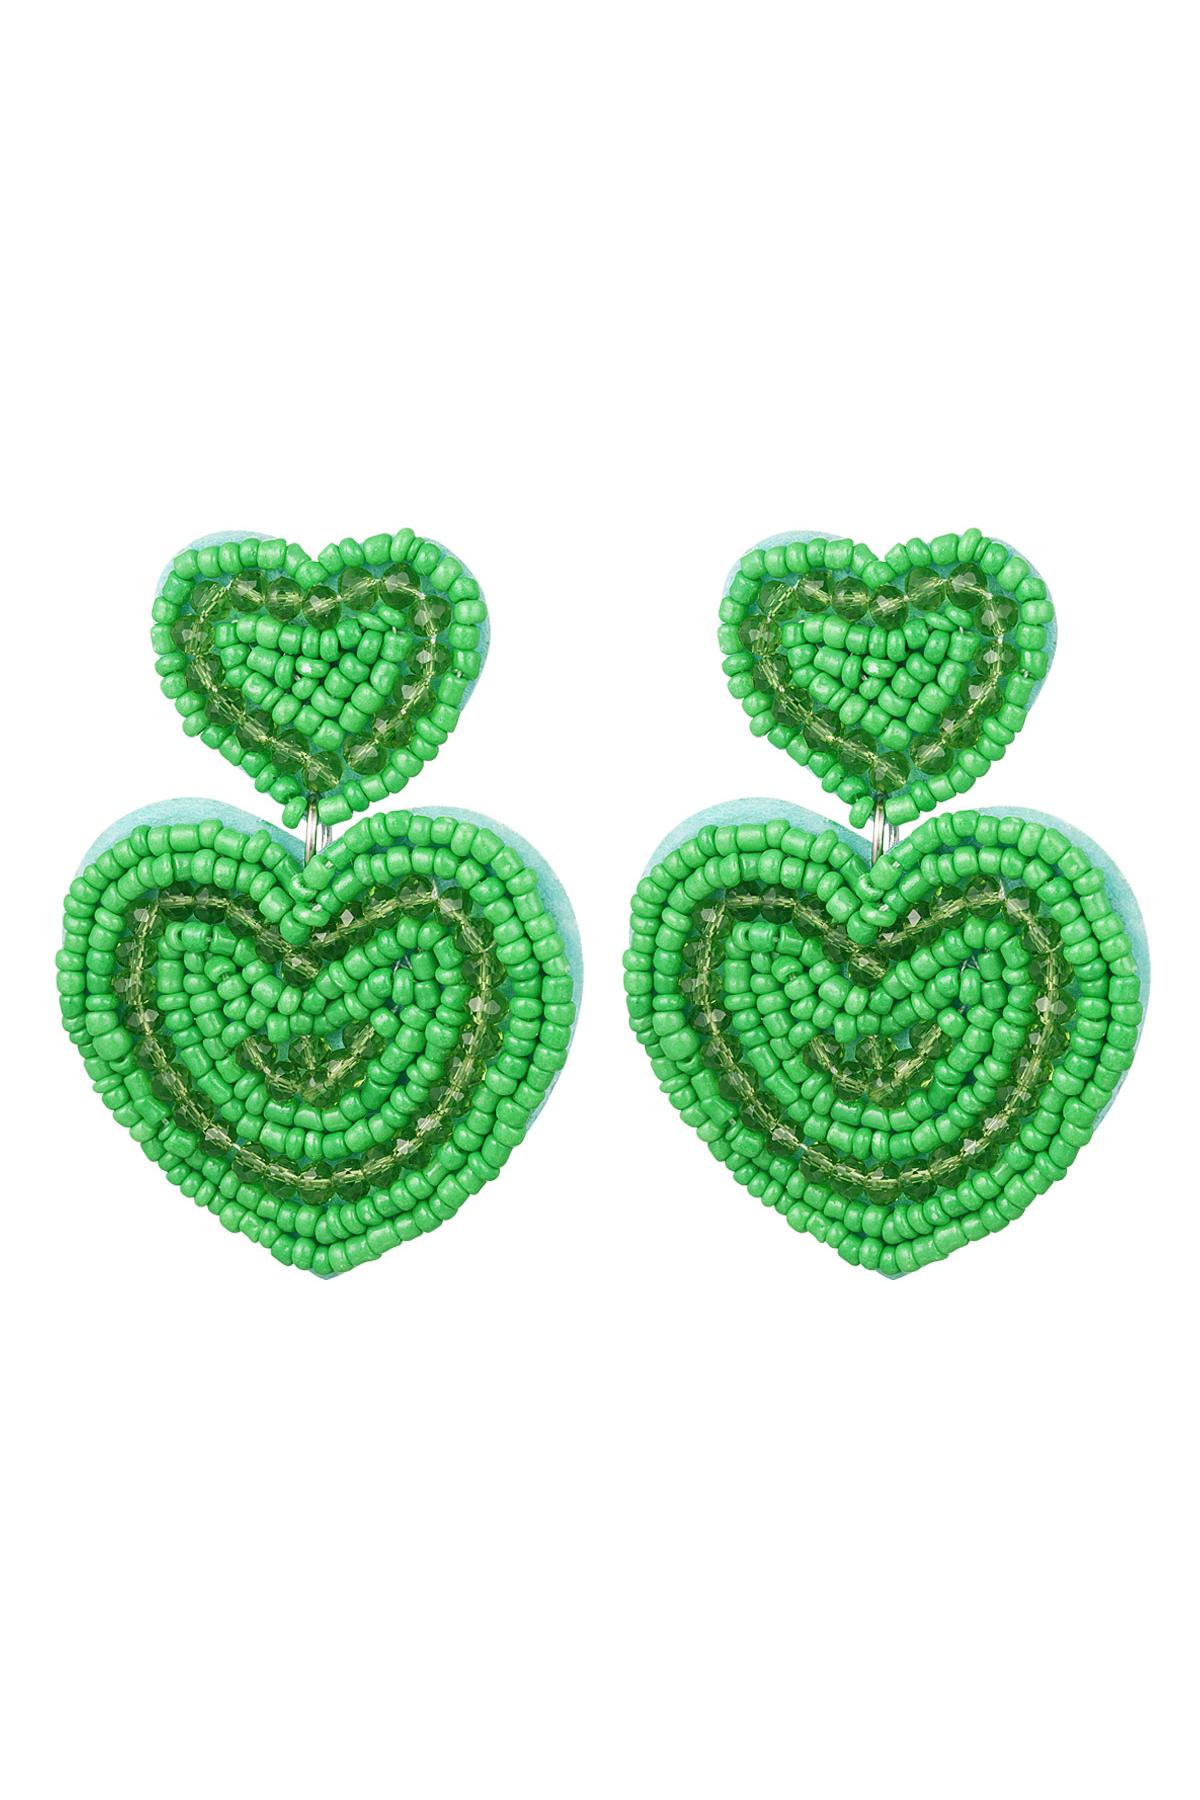 küpe büyük kalpler Green Glass